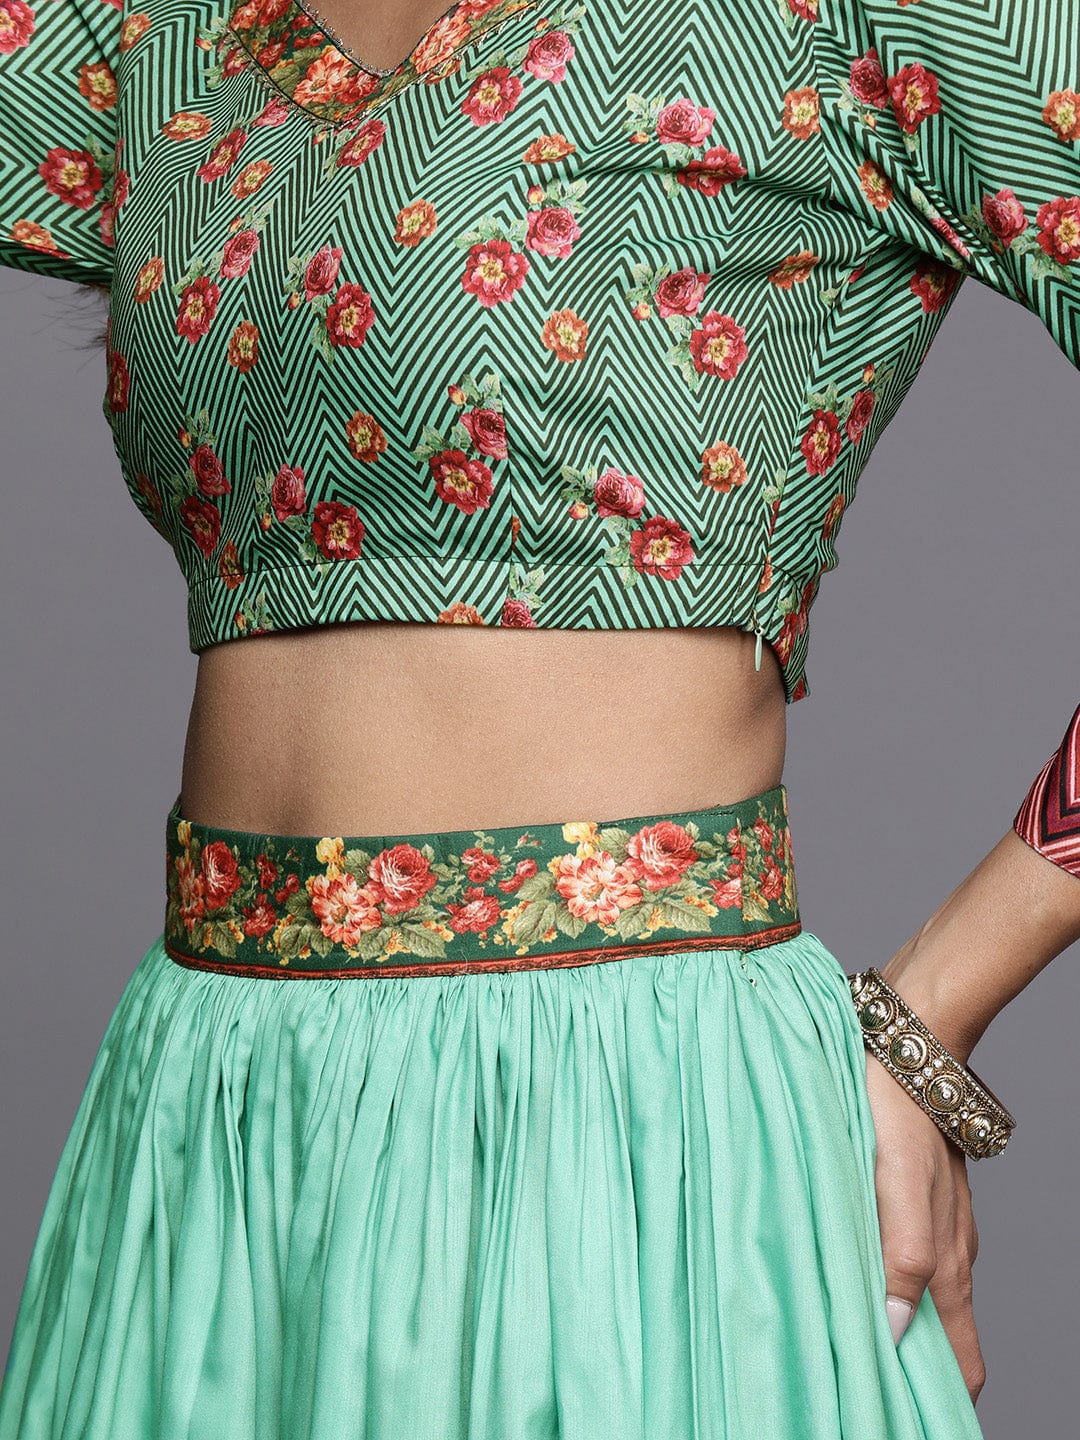 Varanga Embellished Ready To Wear Lehenga & Blouse With Dupatta